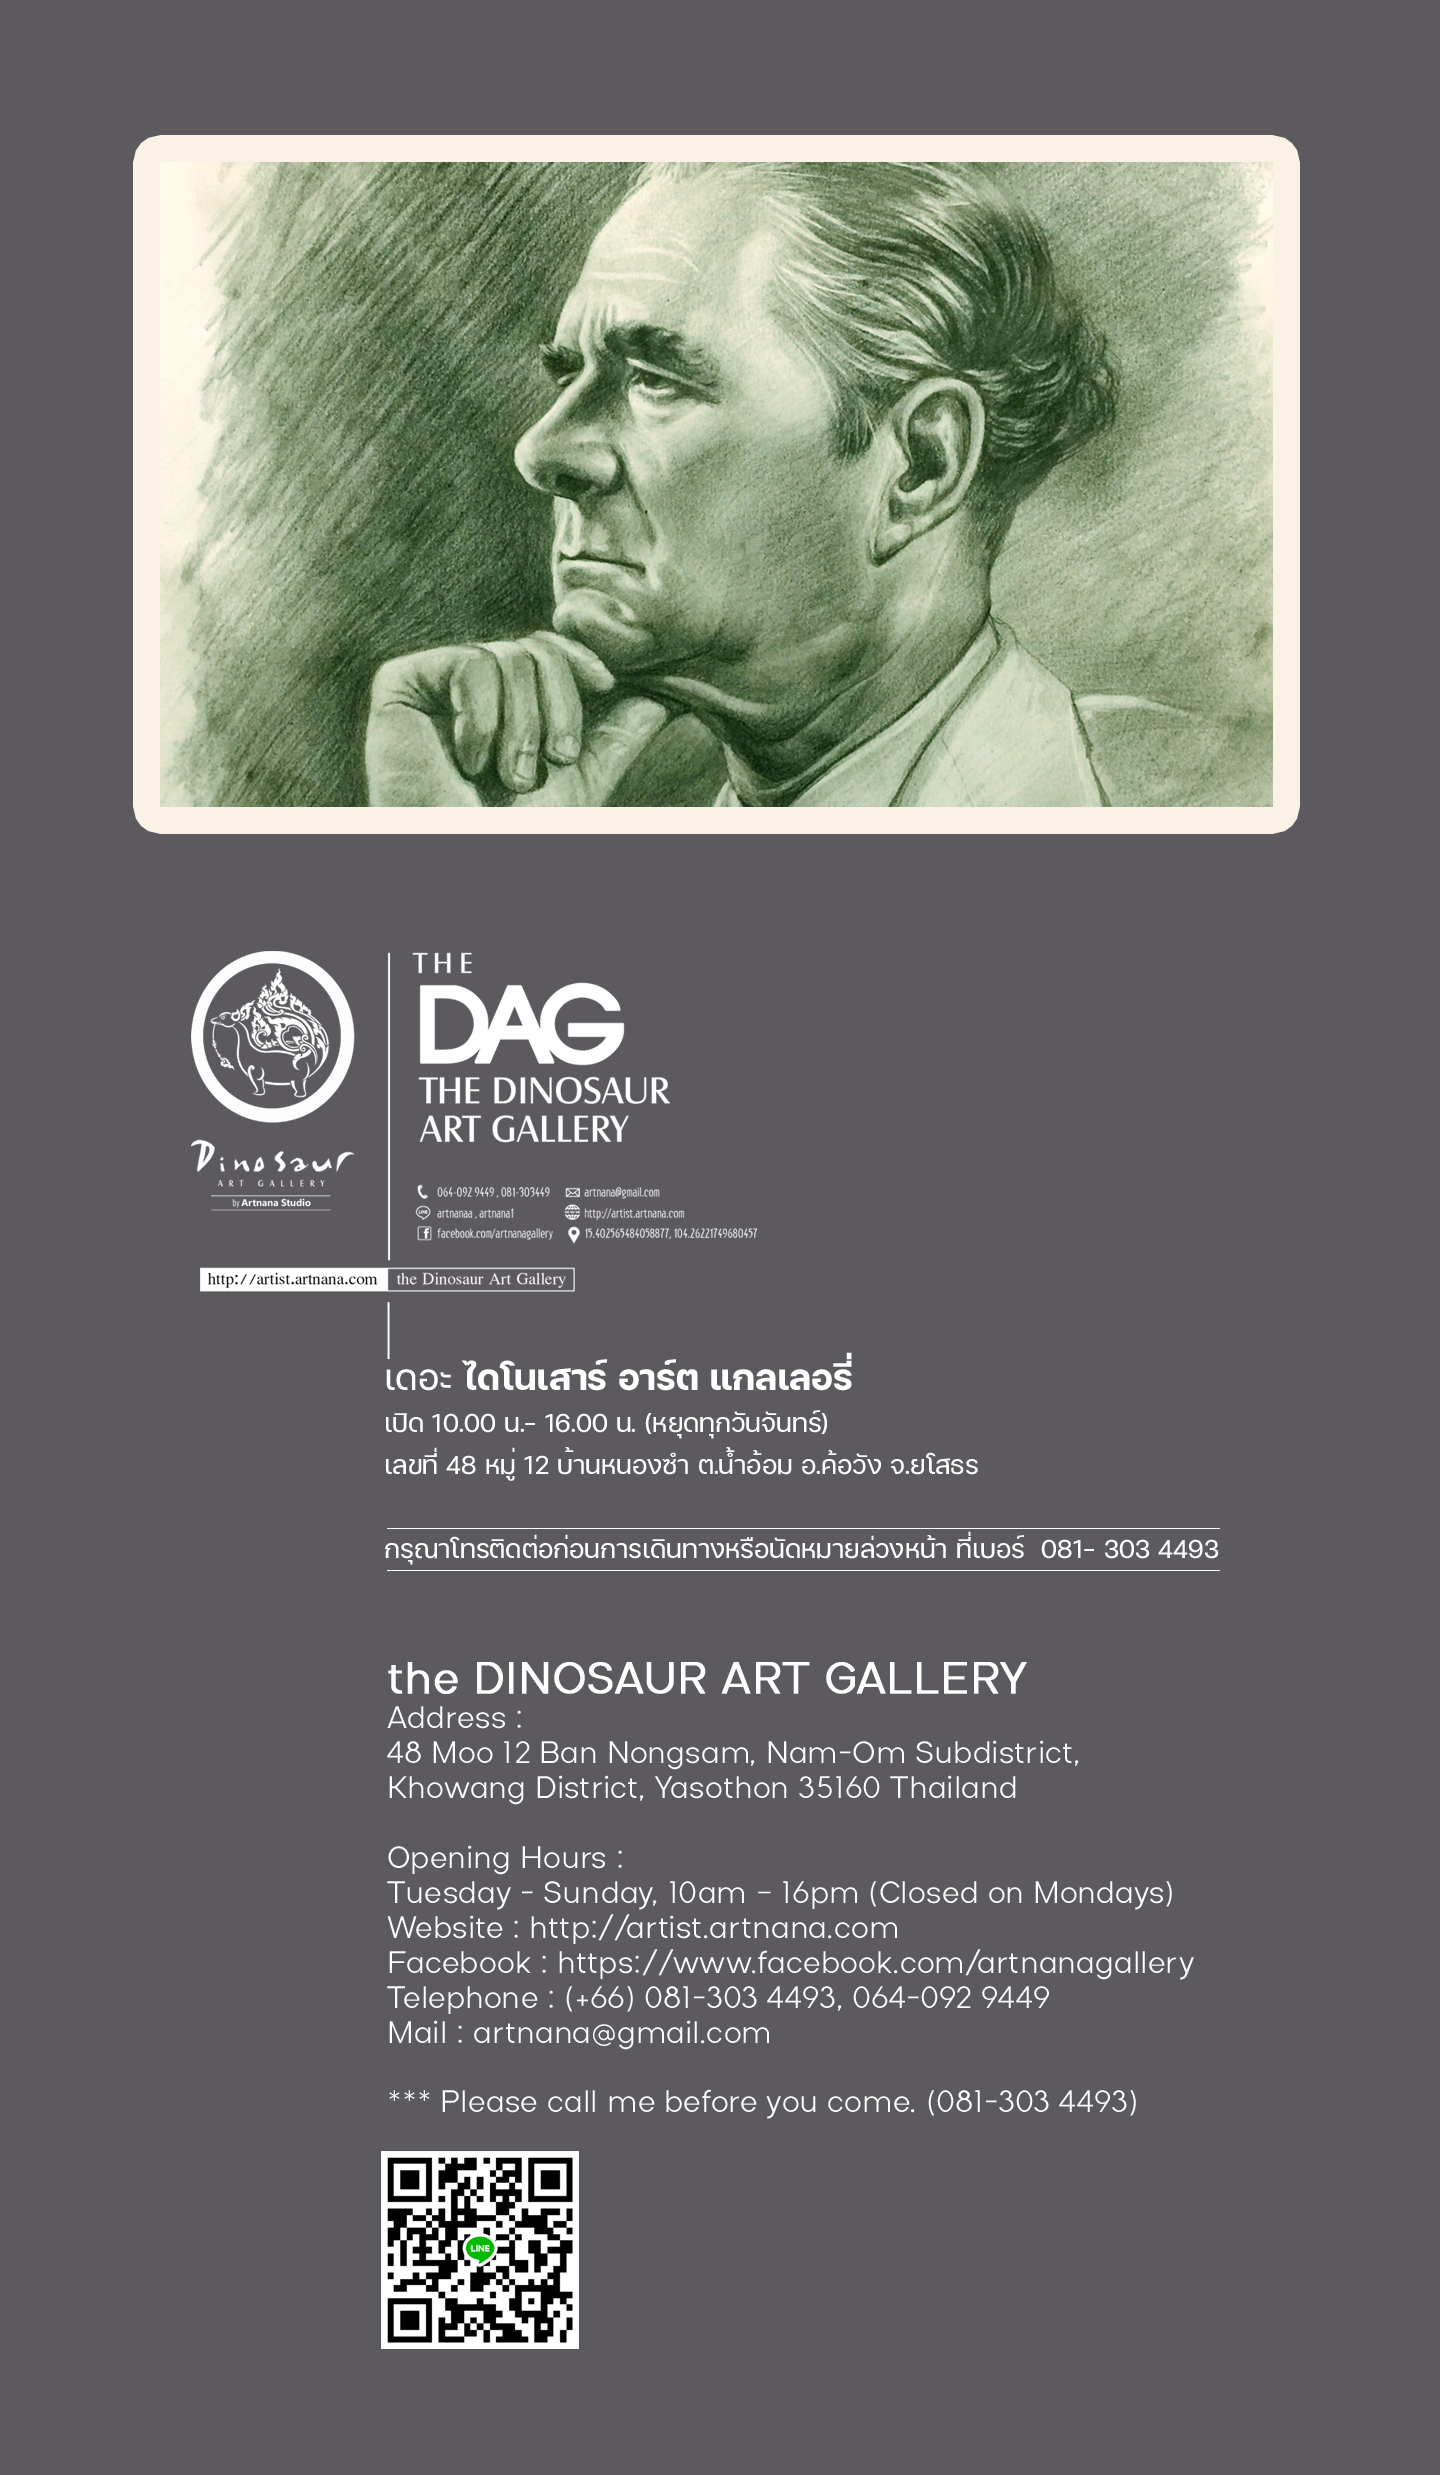 the Dinosaur Art Gallery (the DAG)